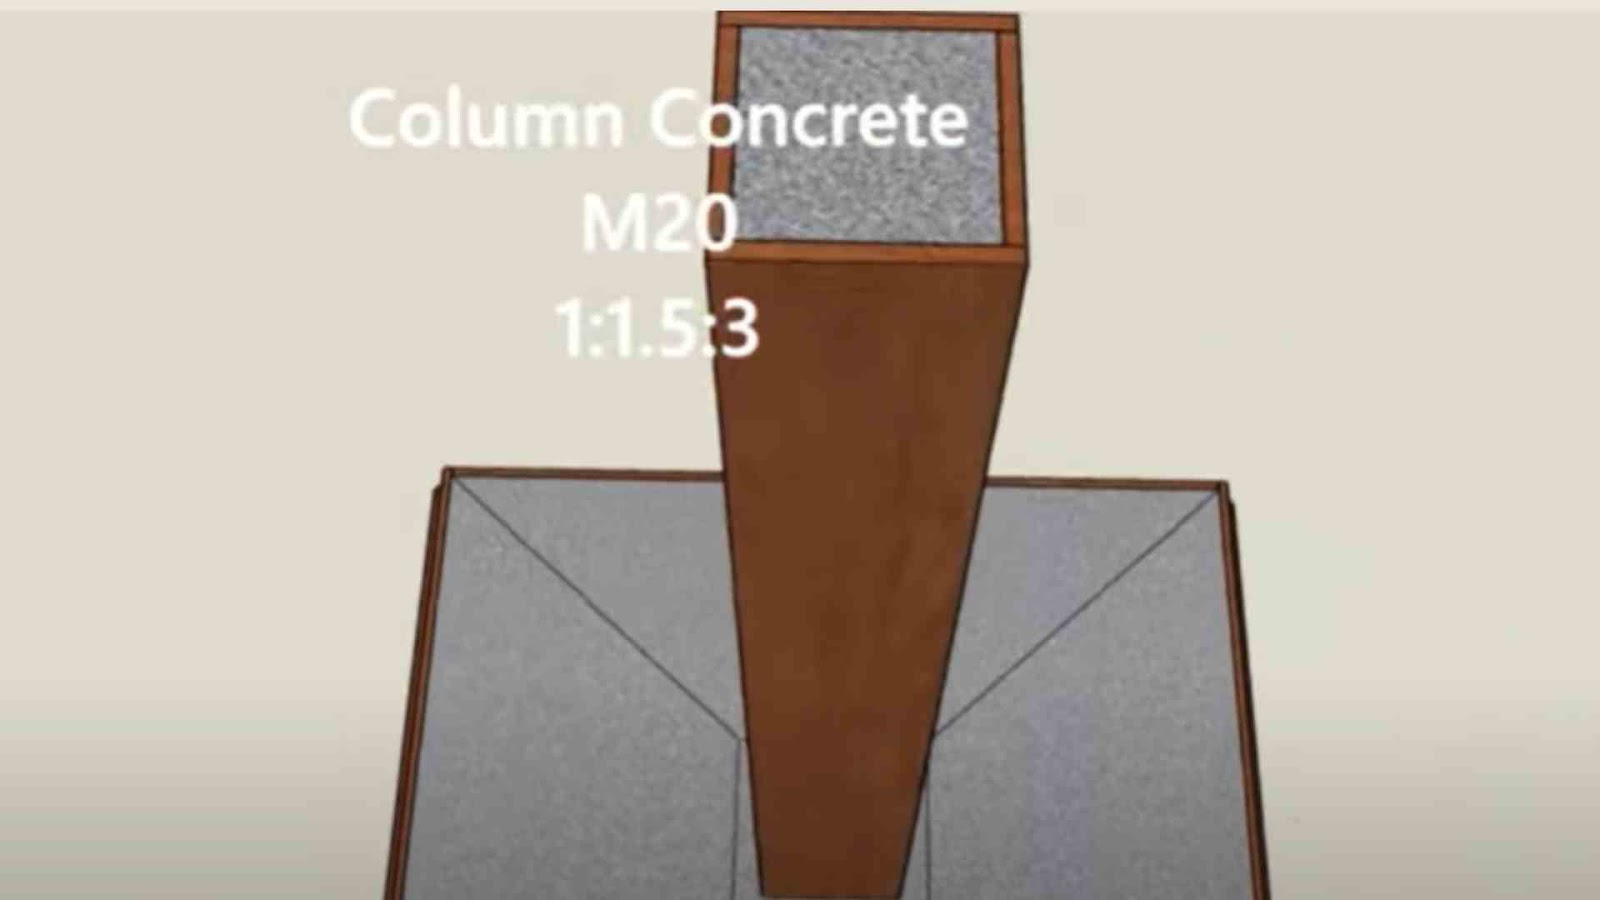 Column concrete